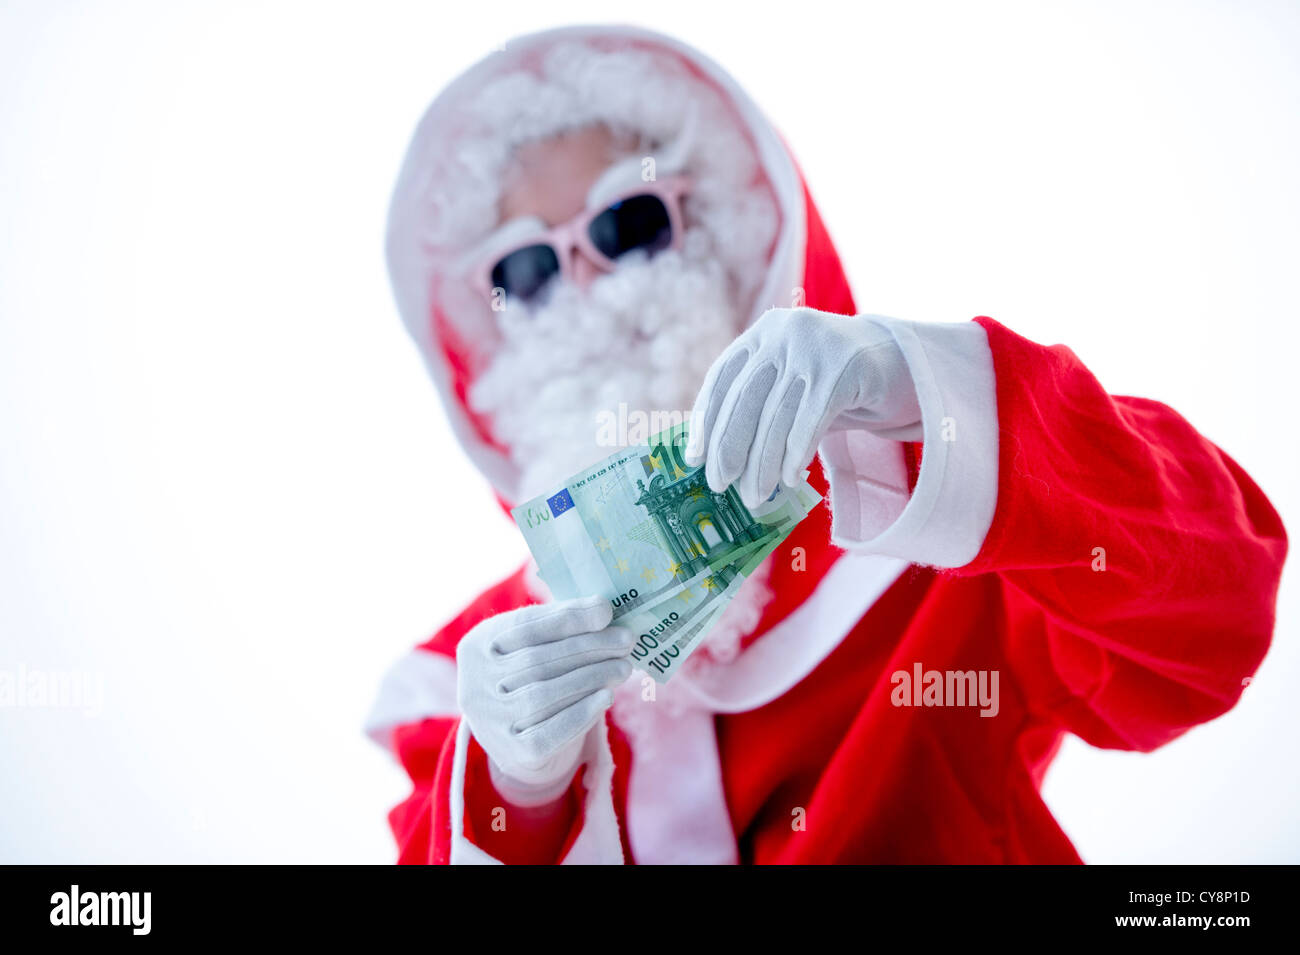 Cool Santa Claus avec des lunettes roses posant avec l'introduction des billets isolé sur fond blanc Banque D'Images